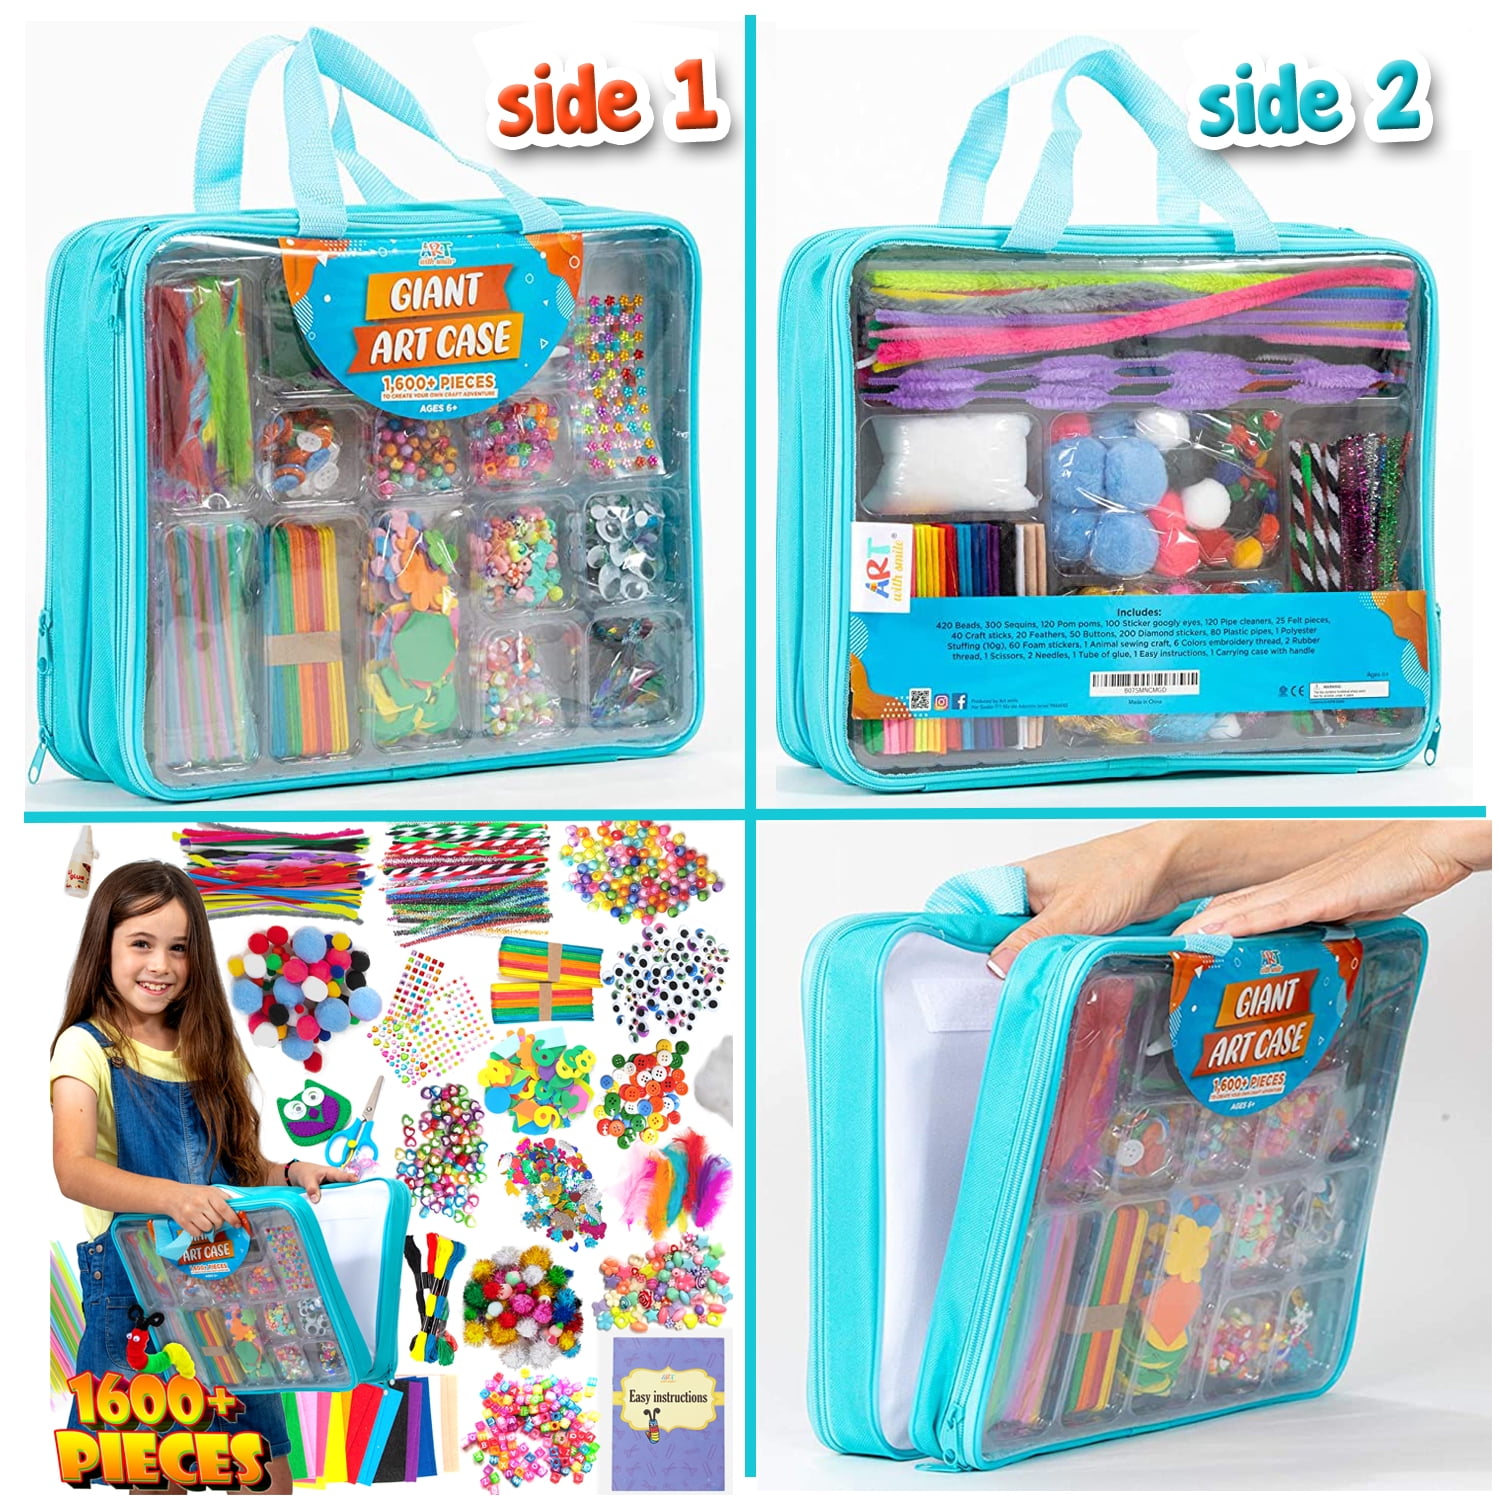 Mega Craft Kit - Kid's Craft Supplies in Carrying Case – RandelAnn's